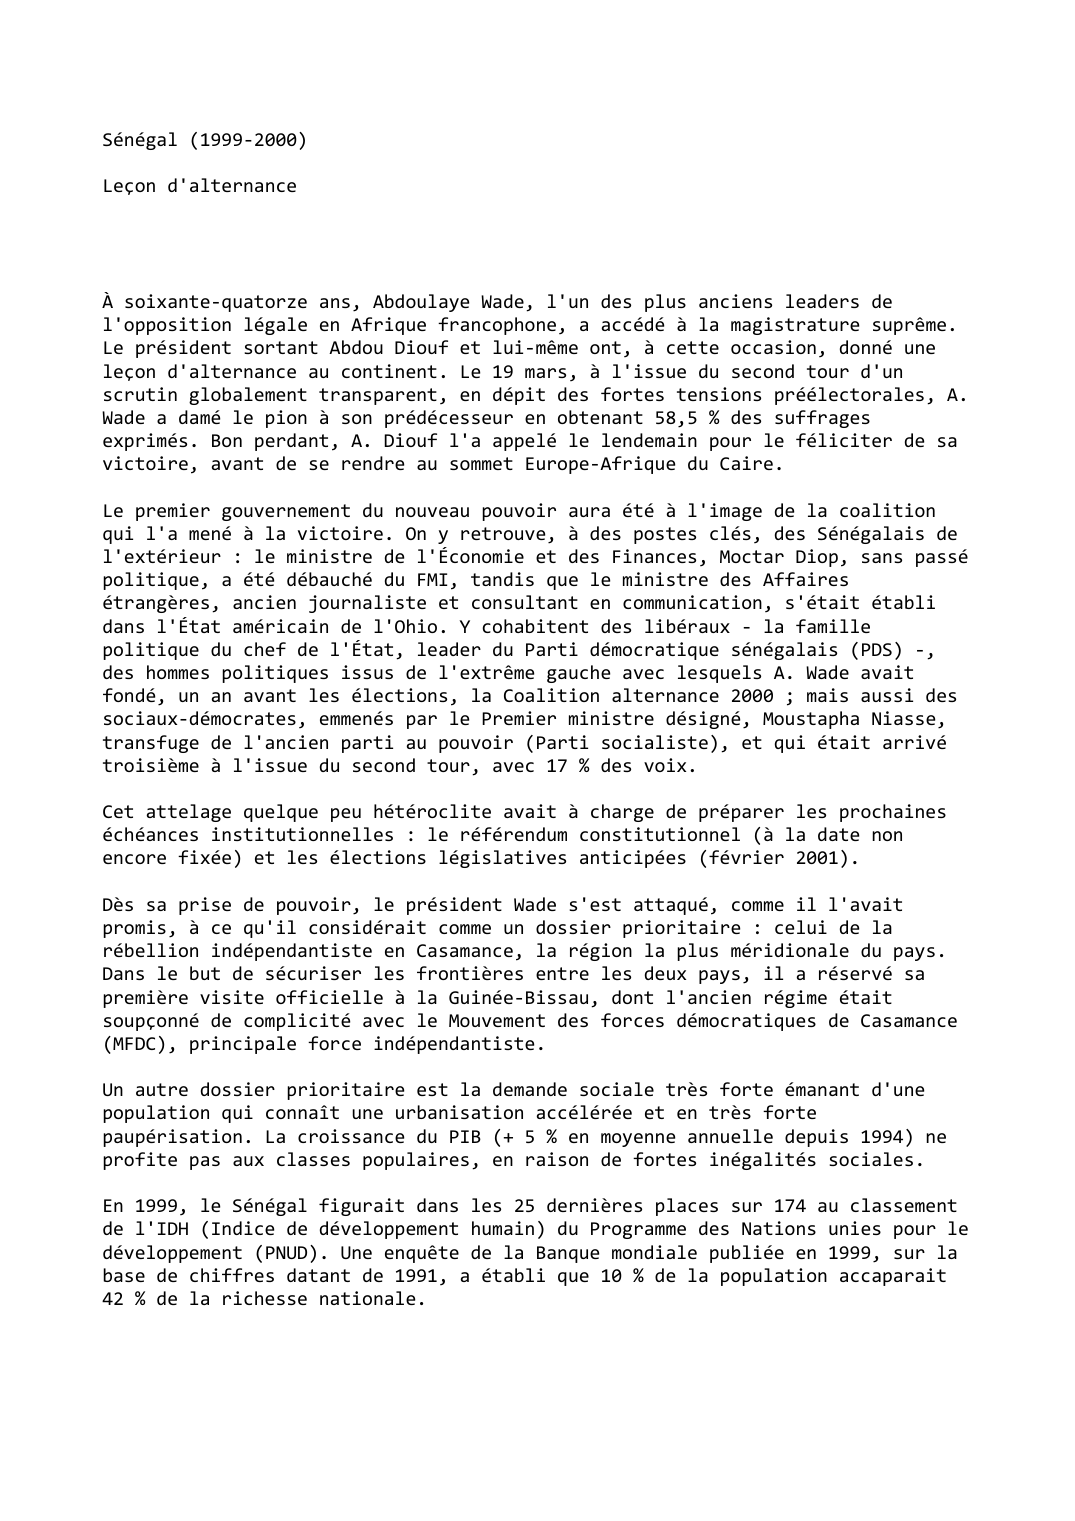 Prévisualisation du document Sénégal (1999-2000)

Leçon d'alternance